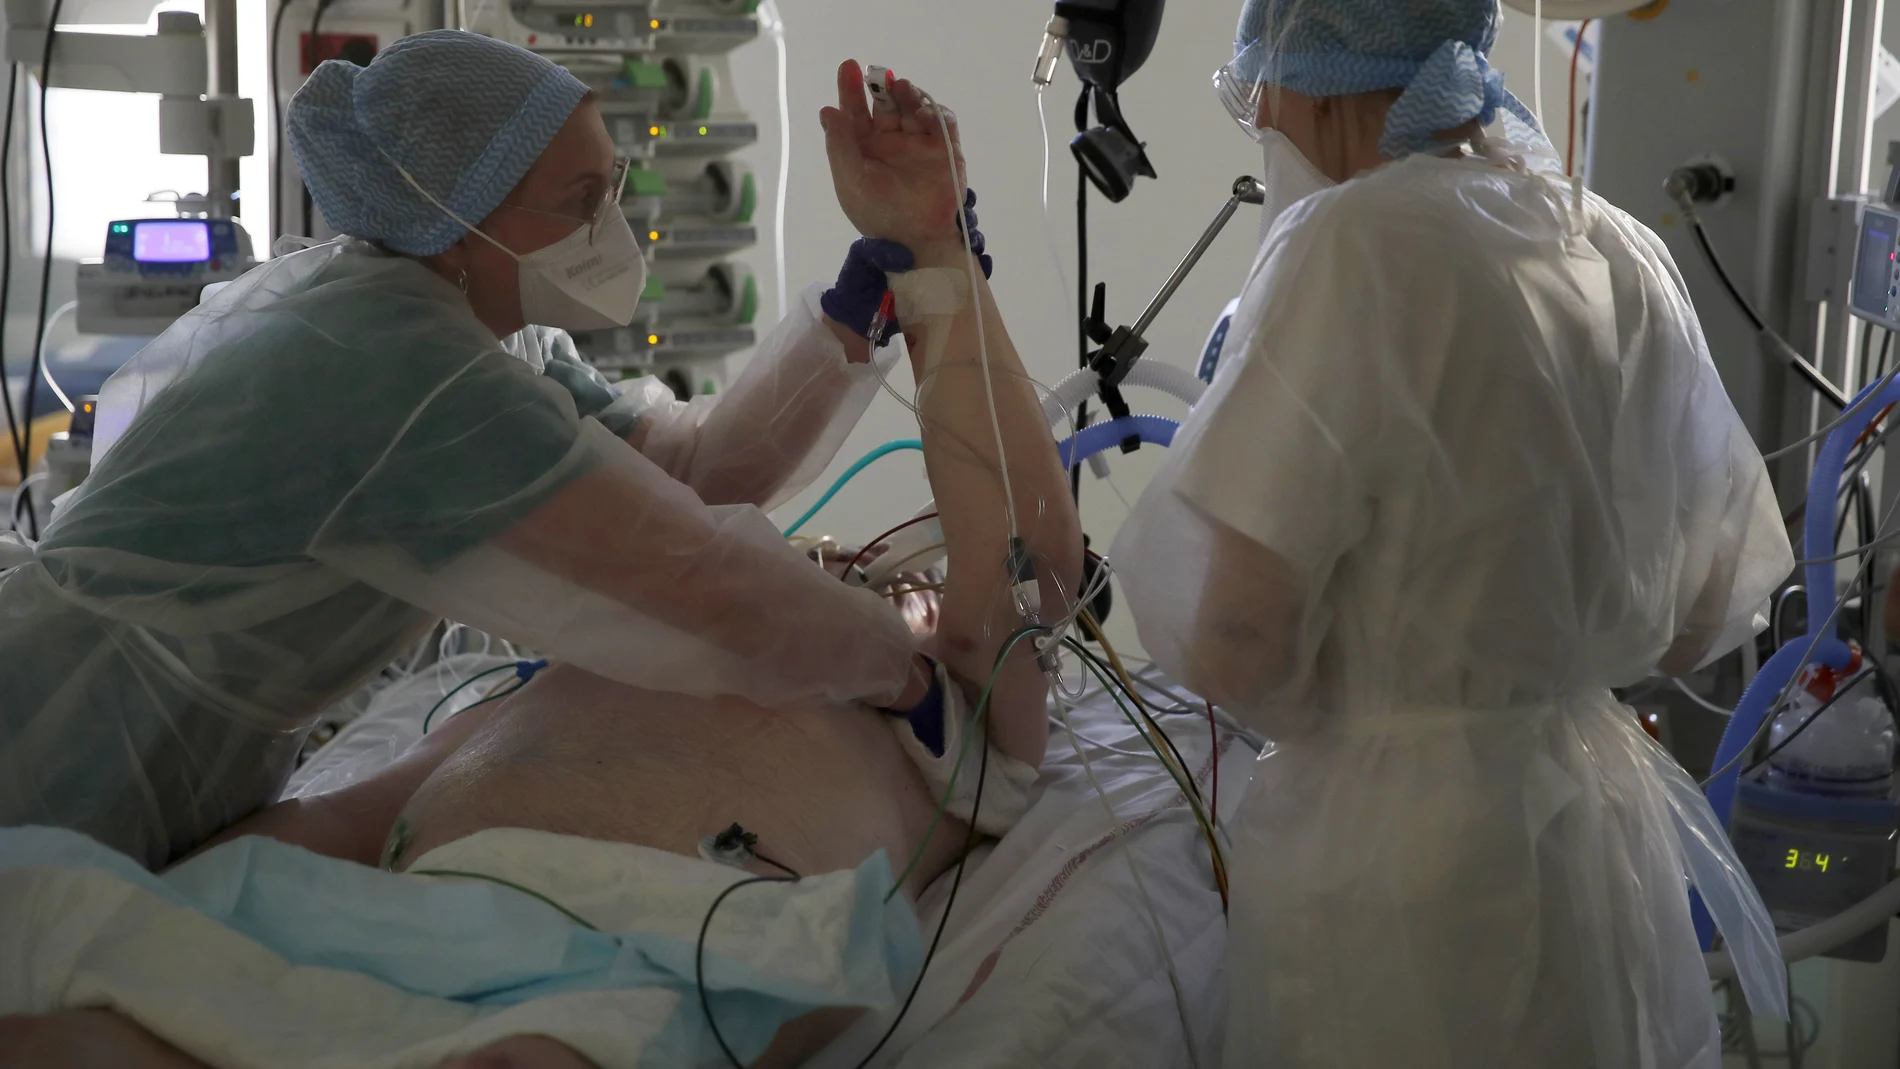 Los médicos atienden a un paciente afectado con el COVID-19 en un hospital francés